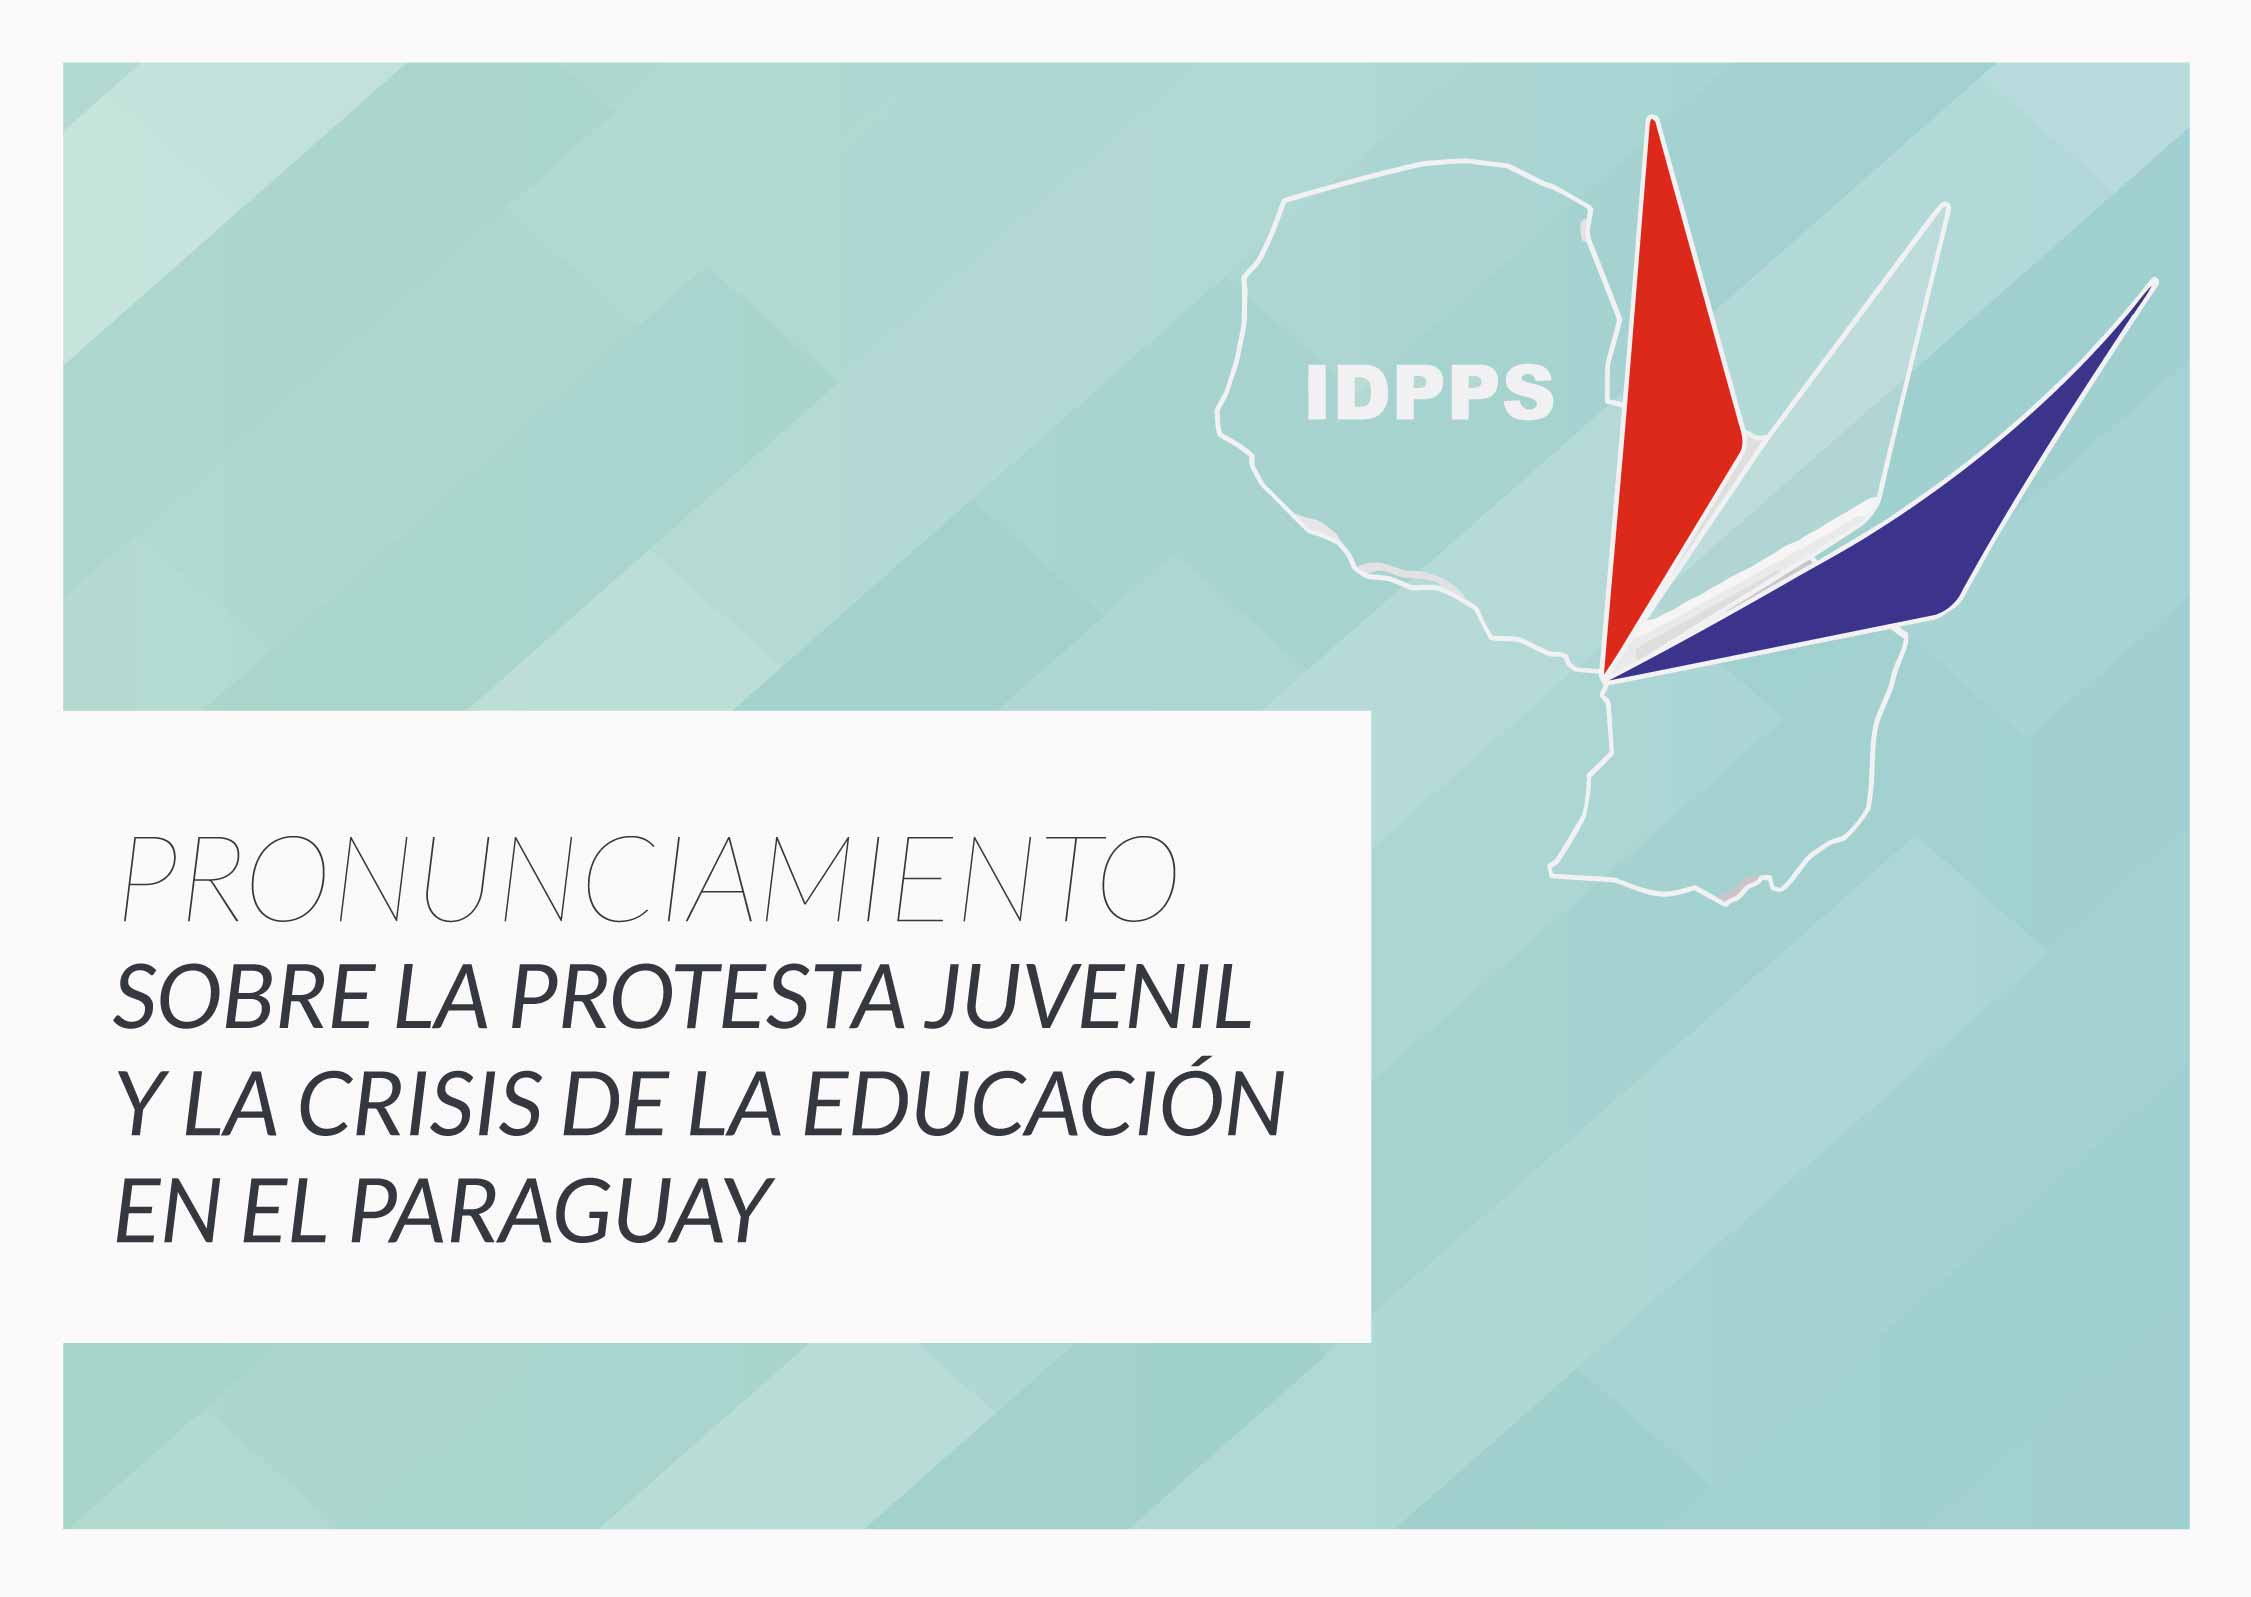 PROTESTA JUVENIL Y CRISIS DE LA EDUCACIÓN EN EL PARAGUAY